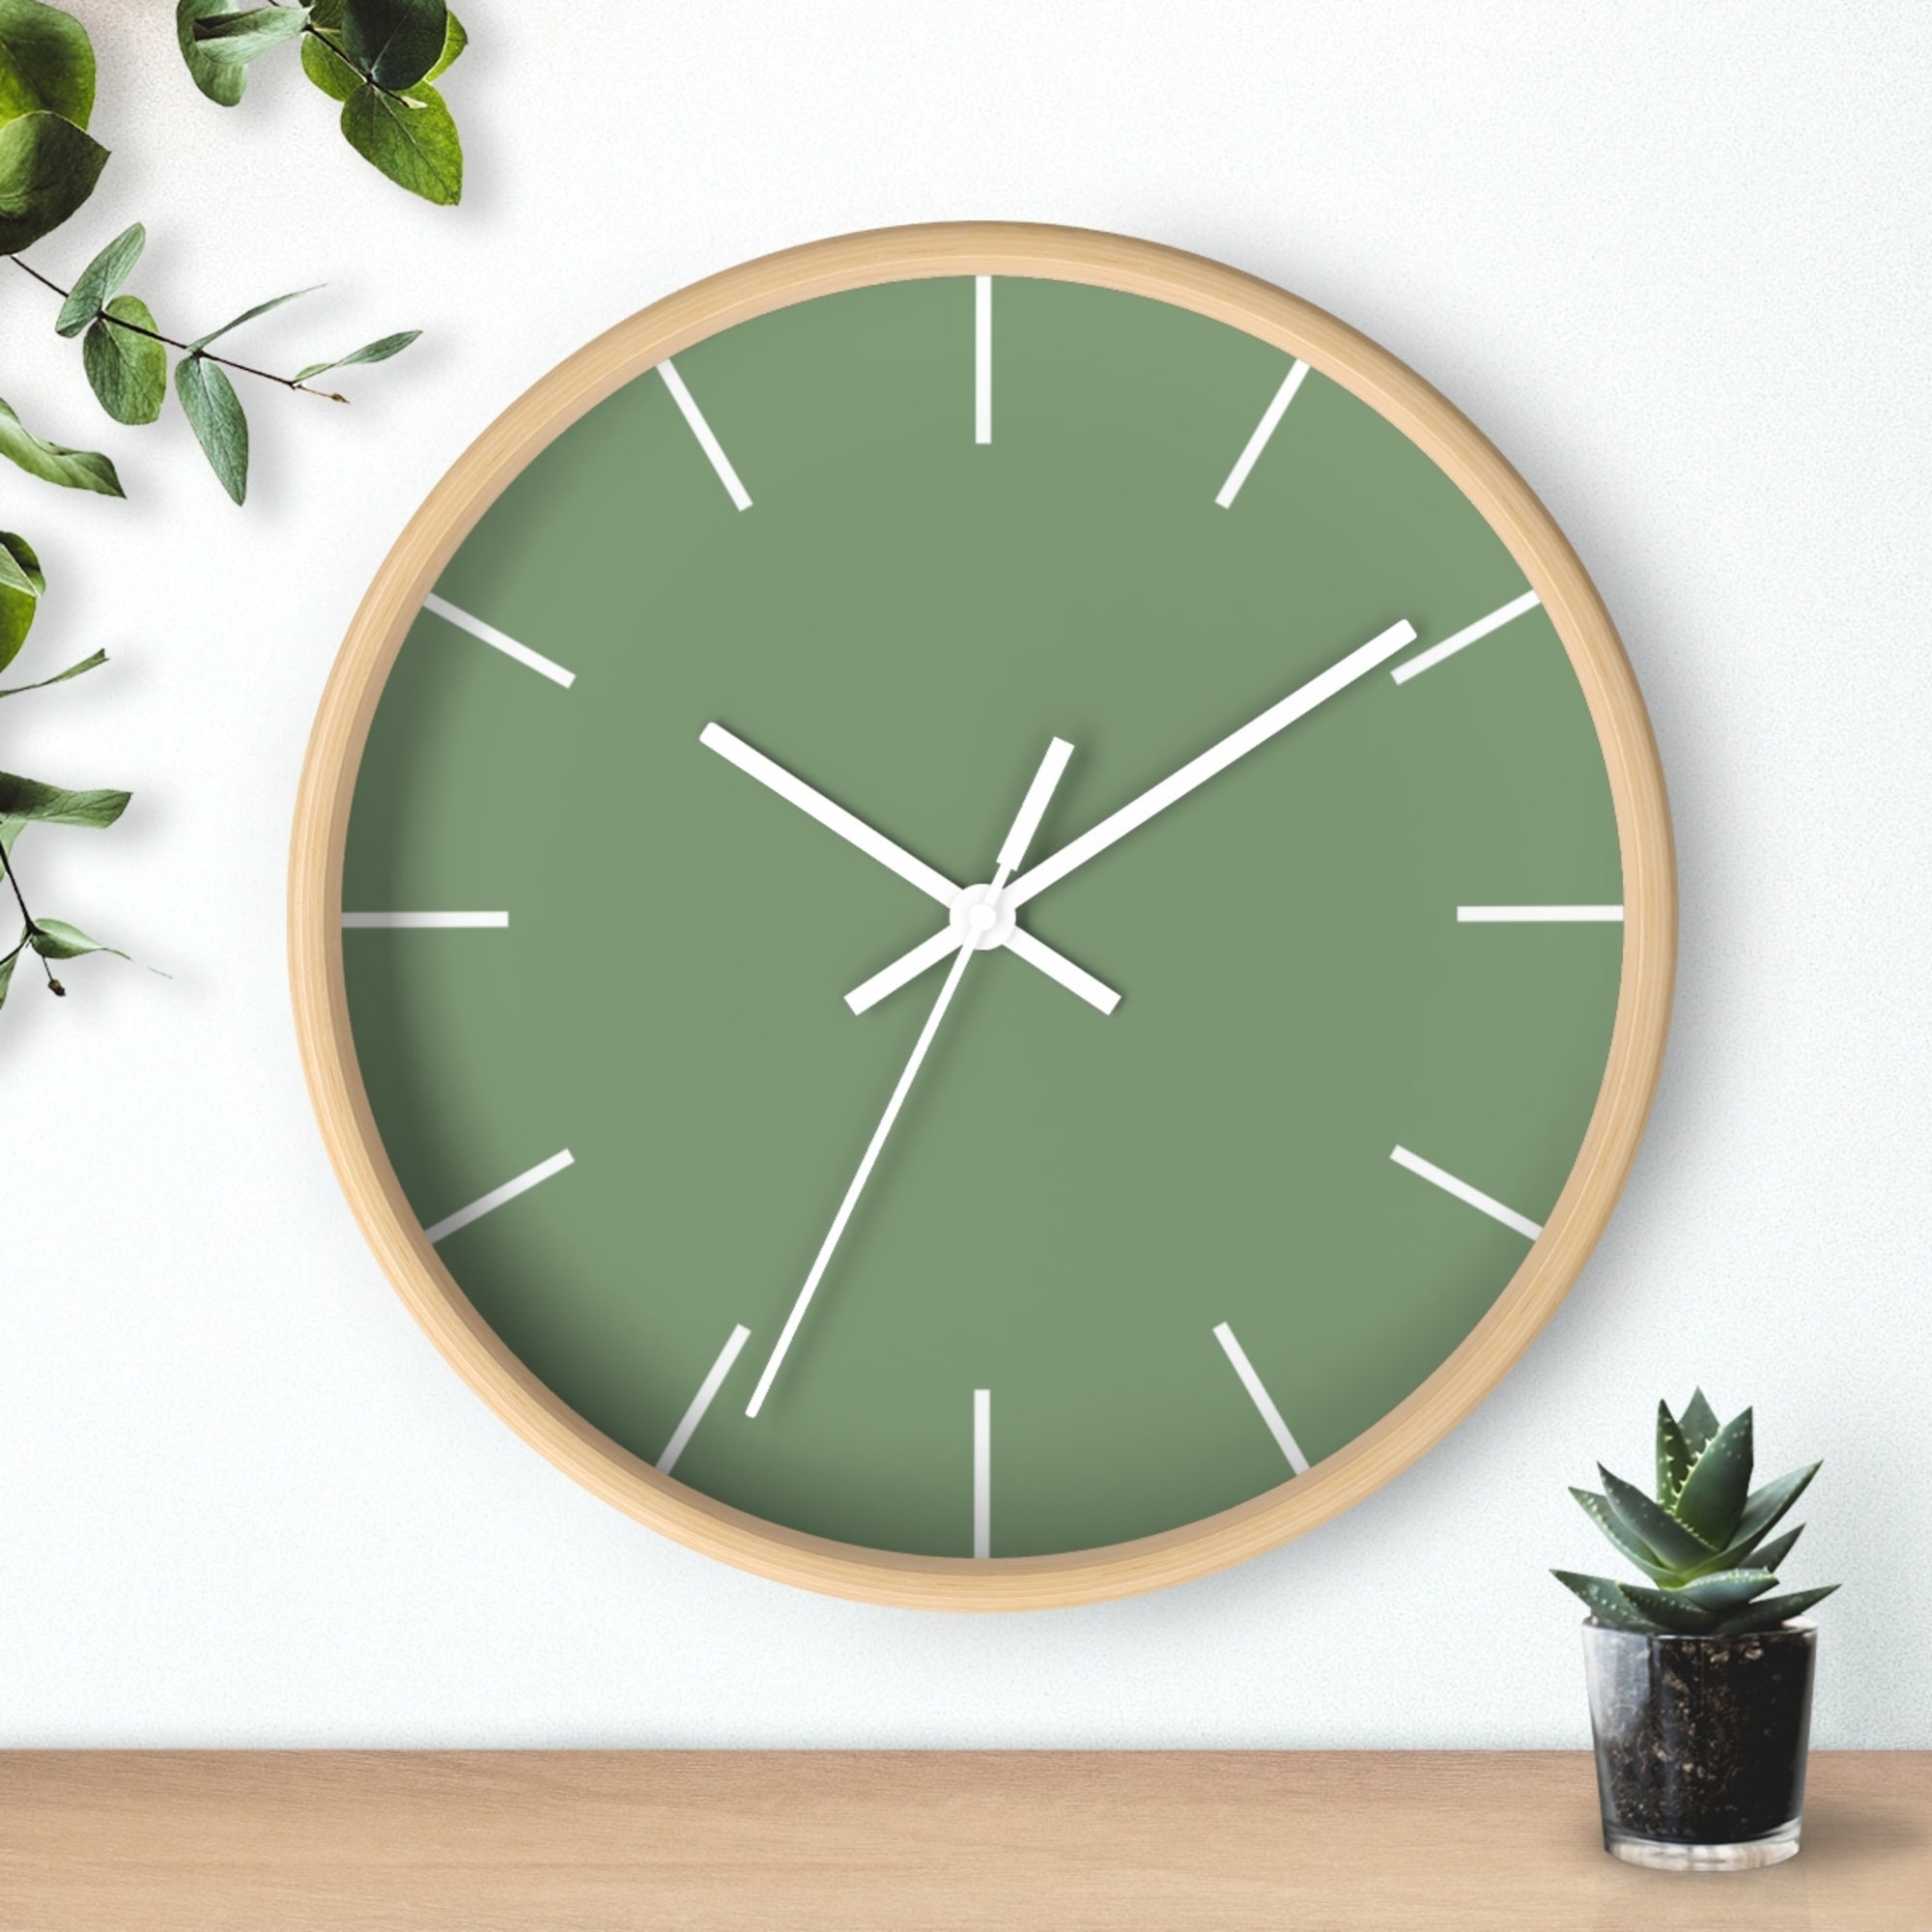 Часы в грине. Часы зеленые. Настенные часы, зеленый. Зеленый час. Зеленые часы 9. айф.